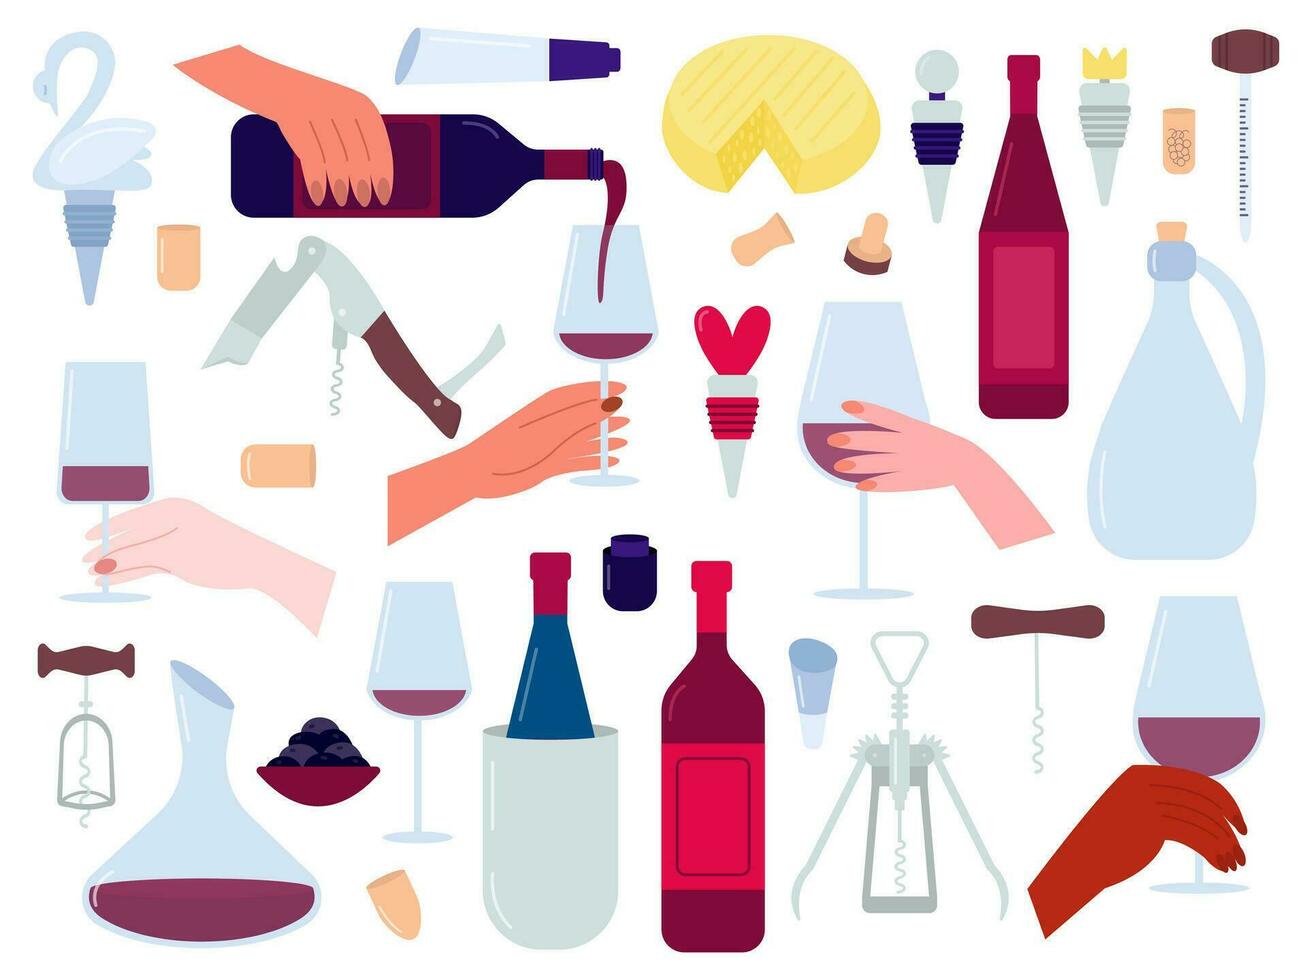 Trinken Wein Vektor eben Design Satz. Wein Gläser, Flaschen, Hand mit Glas, Hand Gießen Wein, Korkenzieher. eben Stil Weingut Konzept Satz.